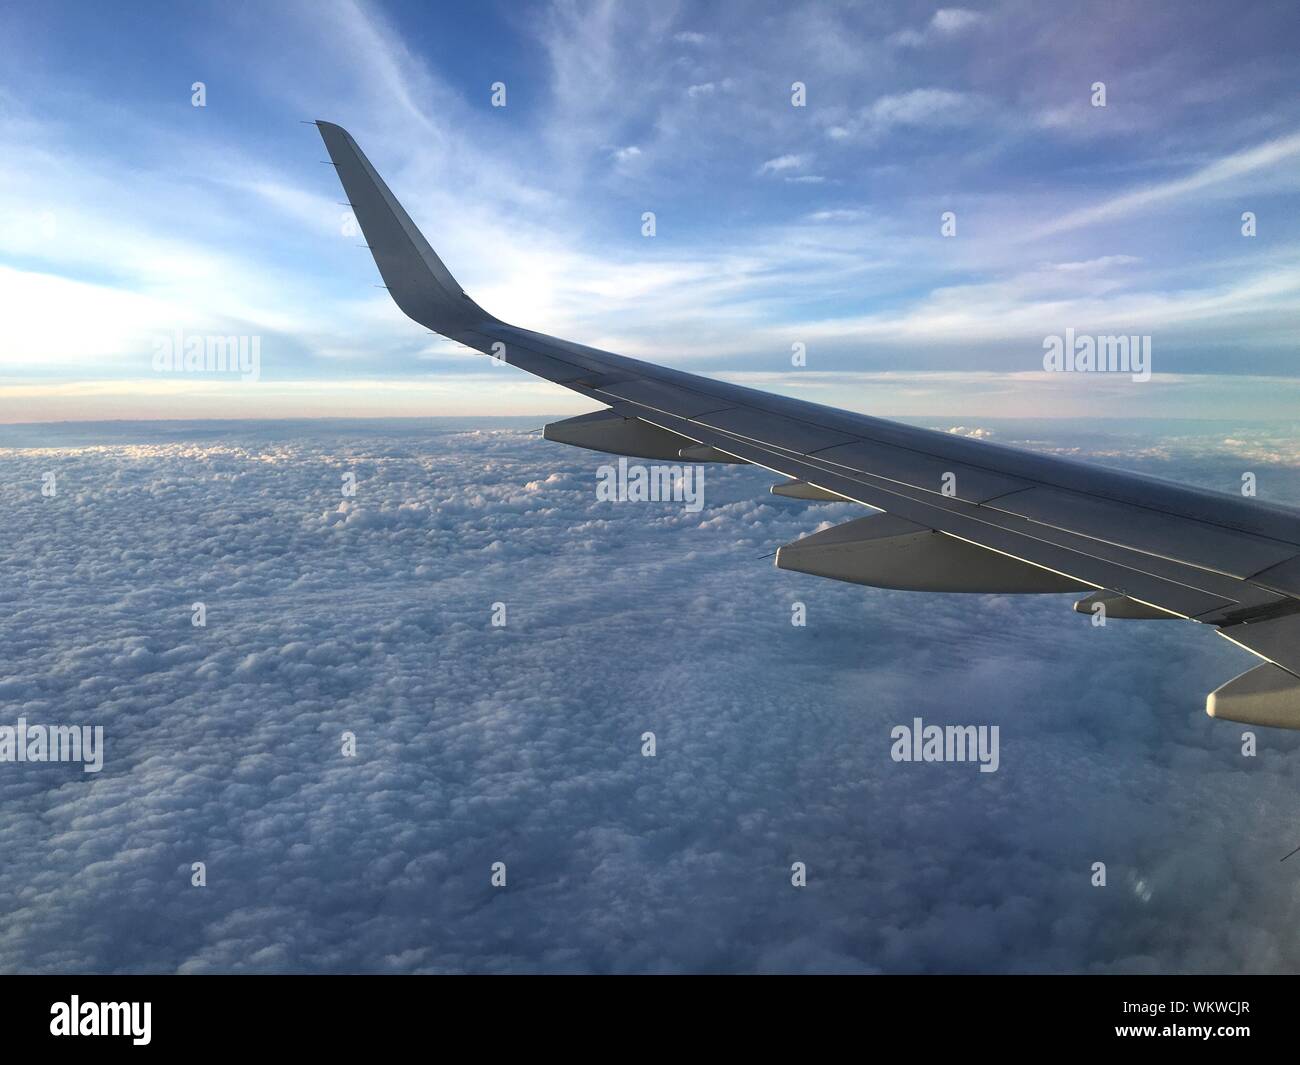 Vista escénica de alas de avión a través de la ventana Foto de stock